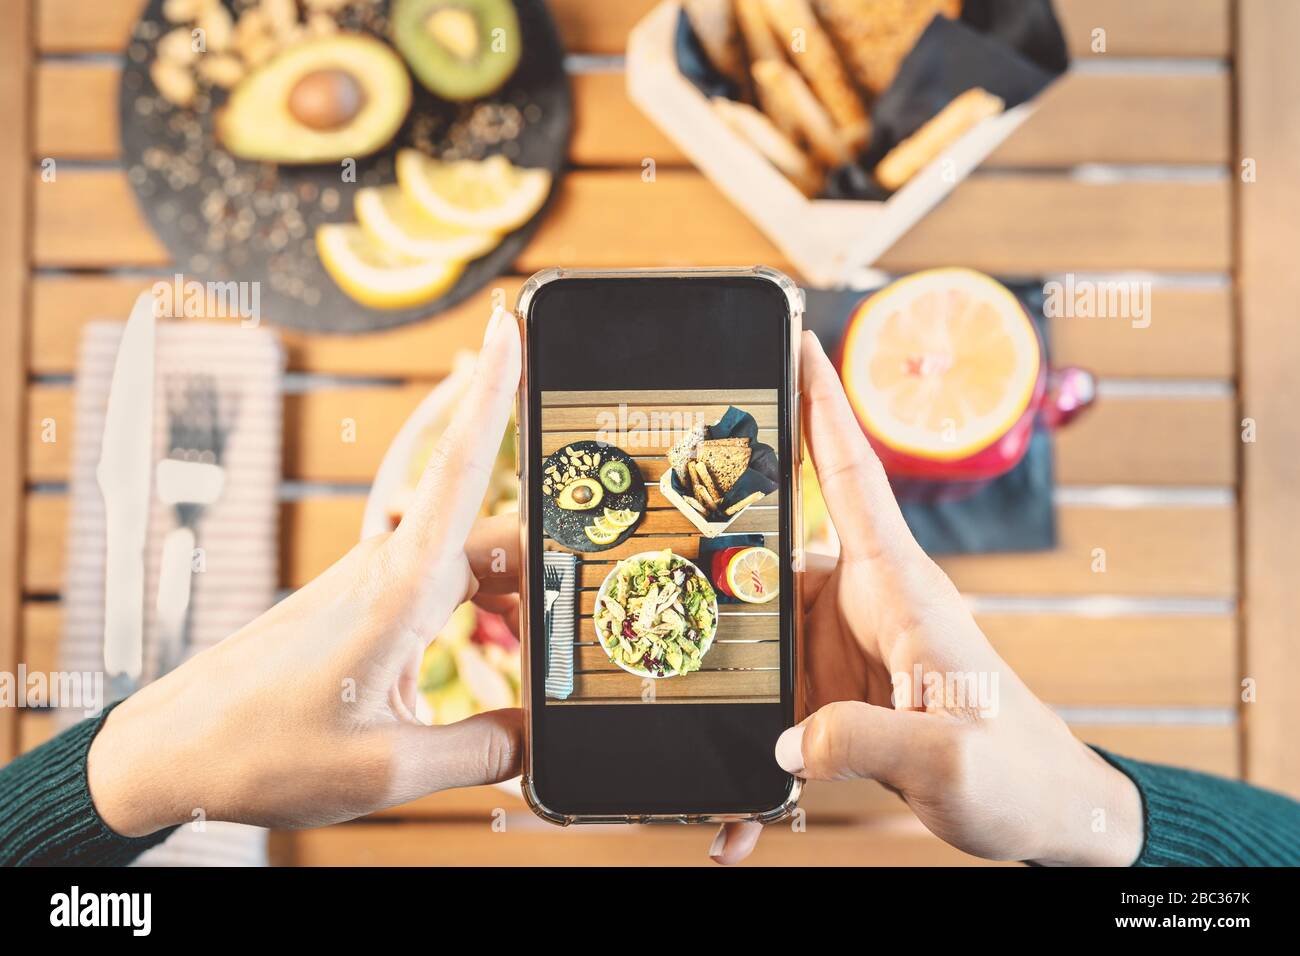 Draufsicht weibliche Hände aufnehmen mit dem Handy auf Gesundheit Mittagessen Essen - junge Mädchen haben Spaß mit neuen Technologie-Apps für soziale Medien Stockfoto